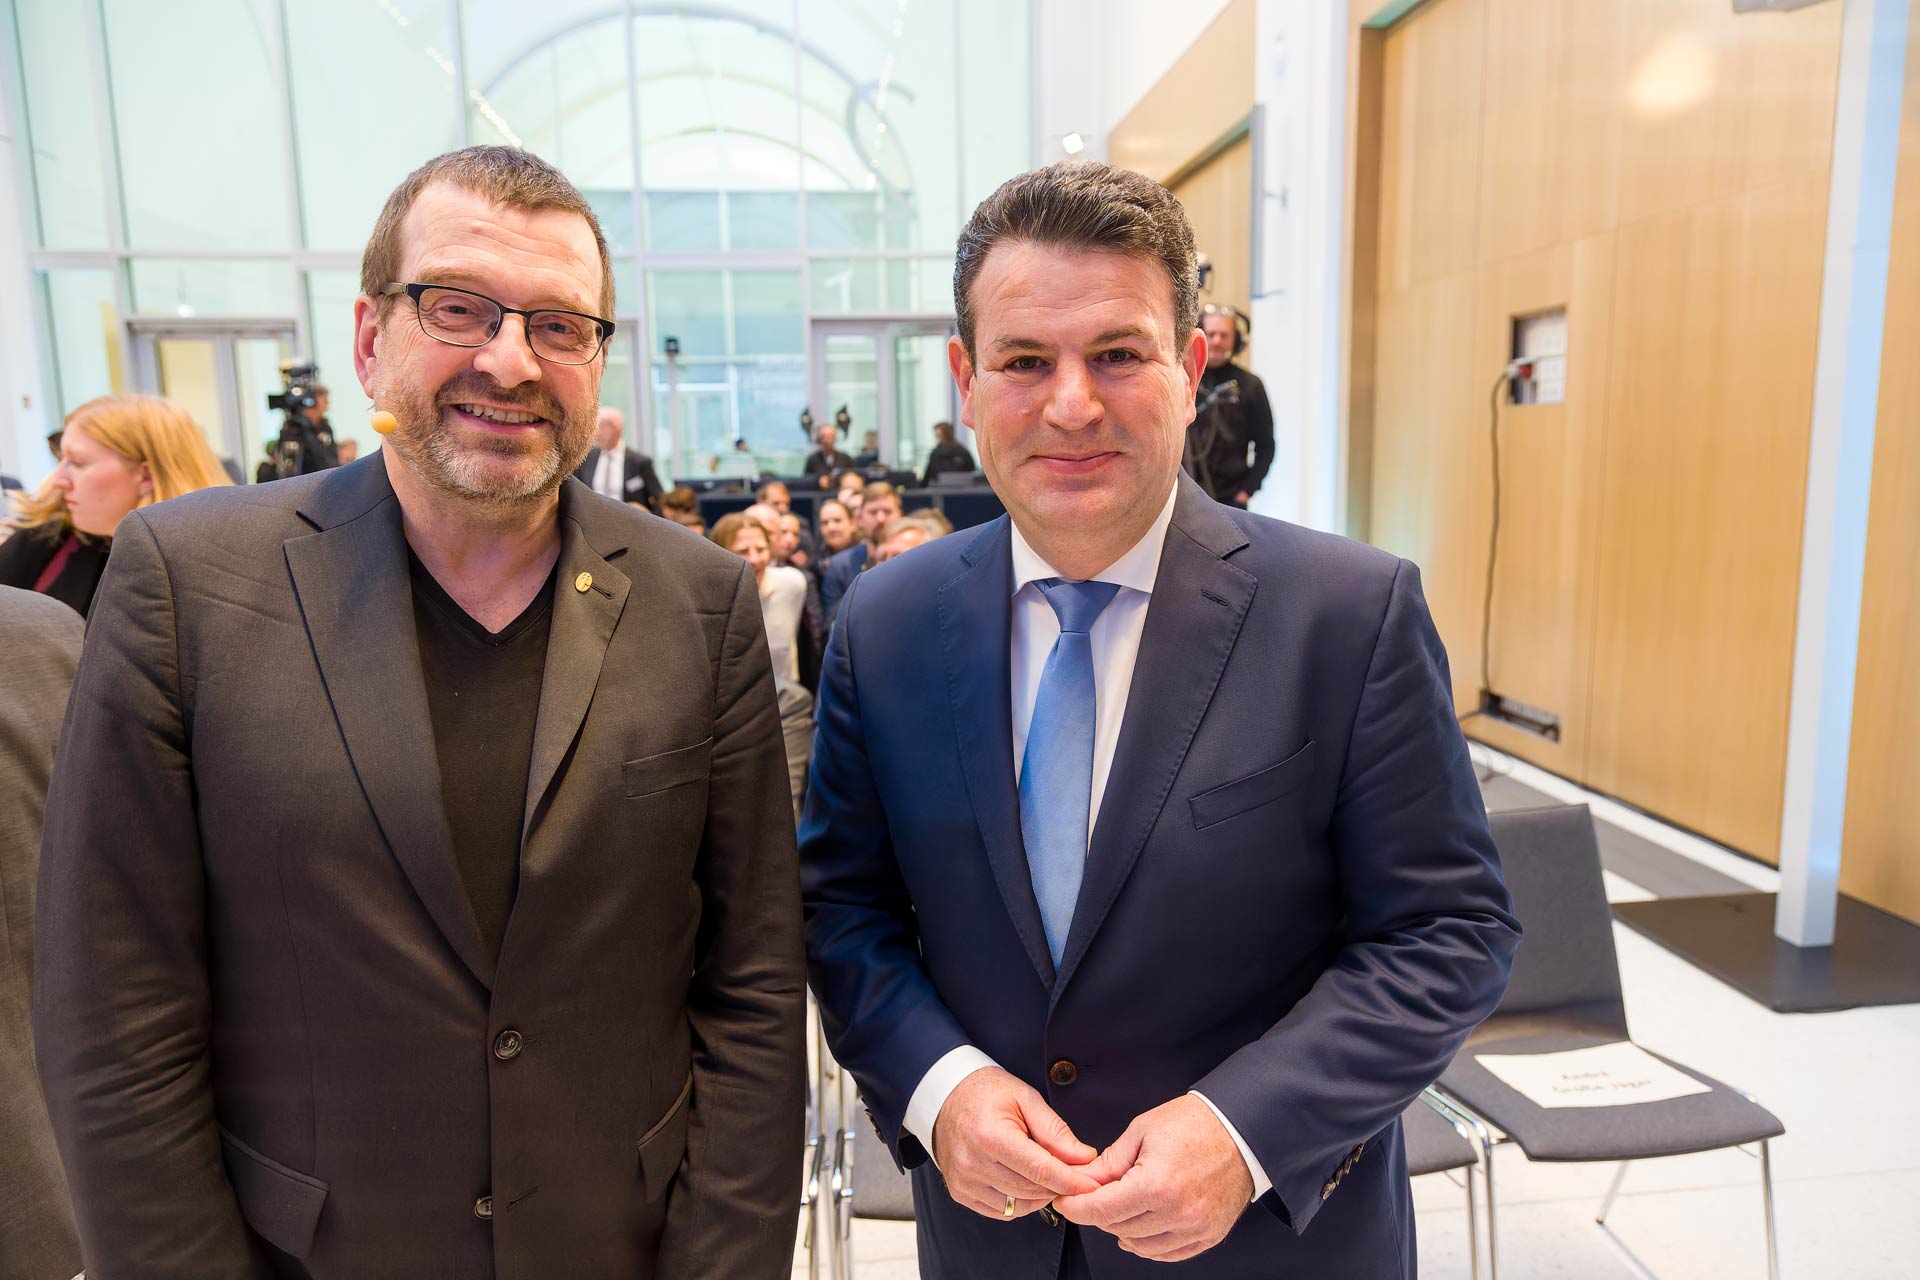 Professor Jochem Marotzke und Arbeitsminister Hubertus Heil posieren lächelnd für ein Foto.